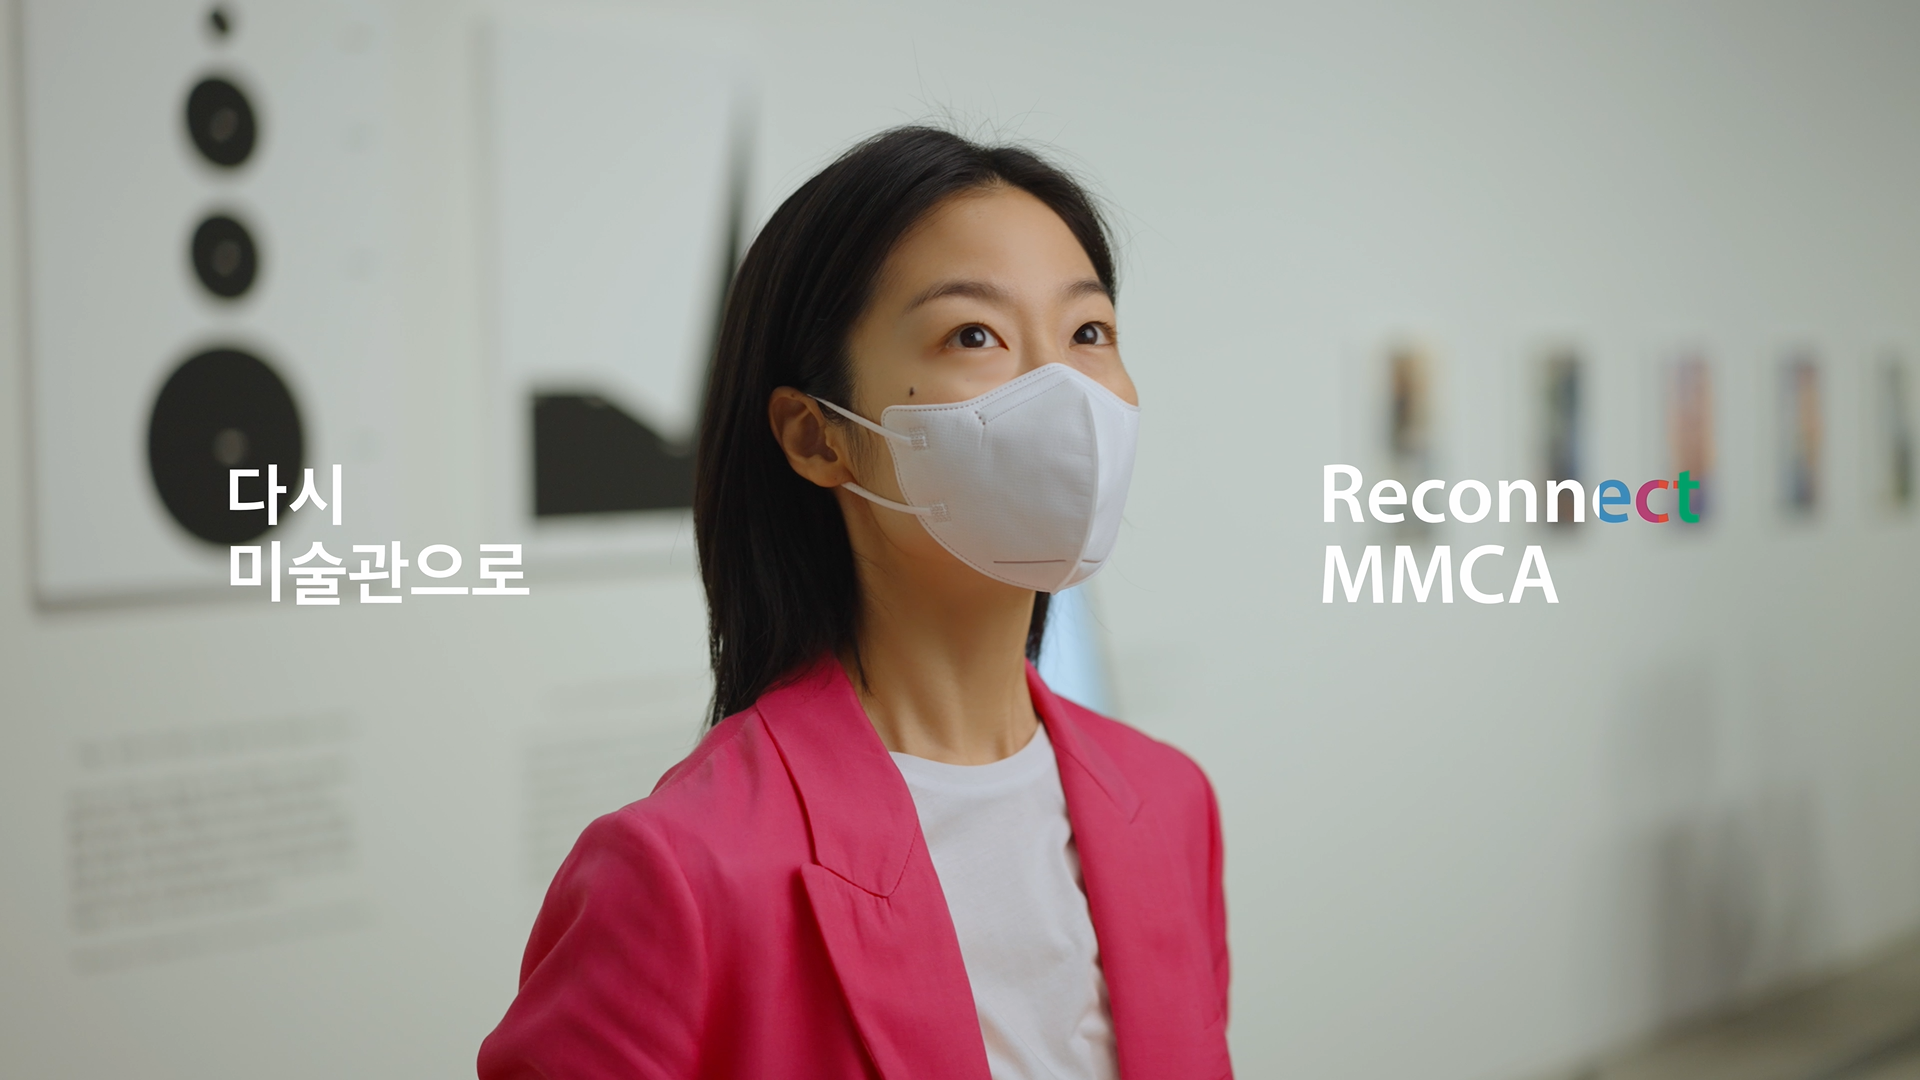 2021 국립현대미술관 캠페인 “다시 미술관으로 Reconnect MMCA”